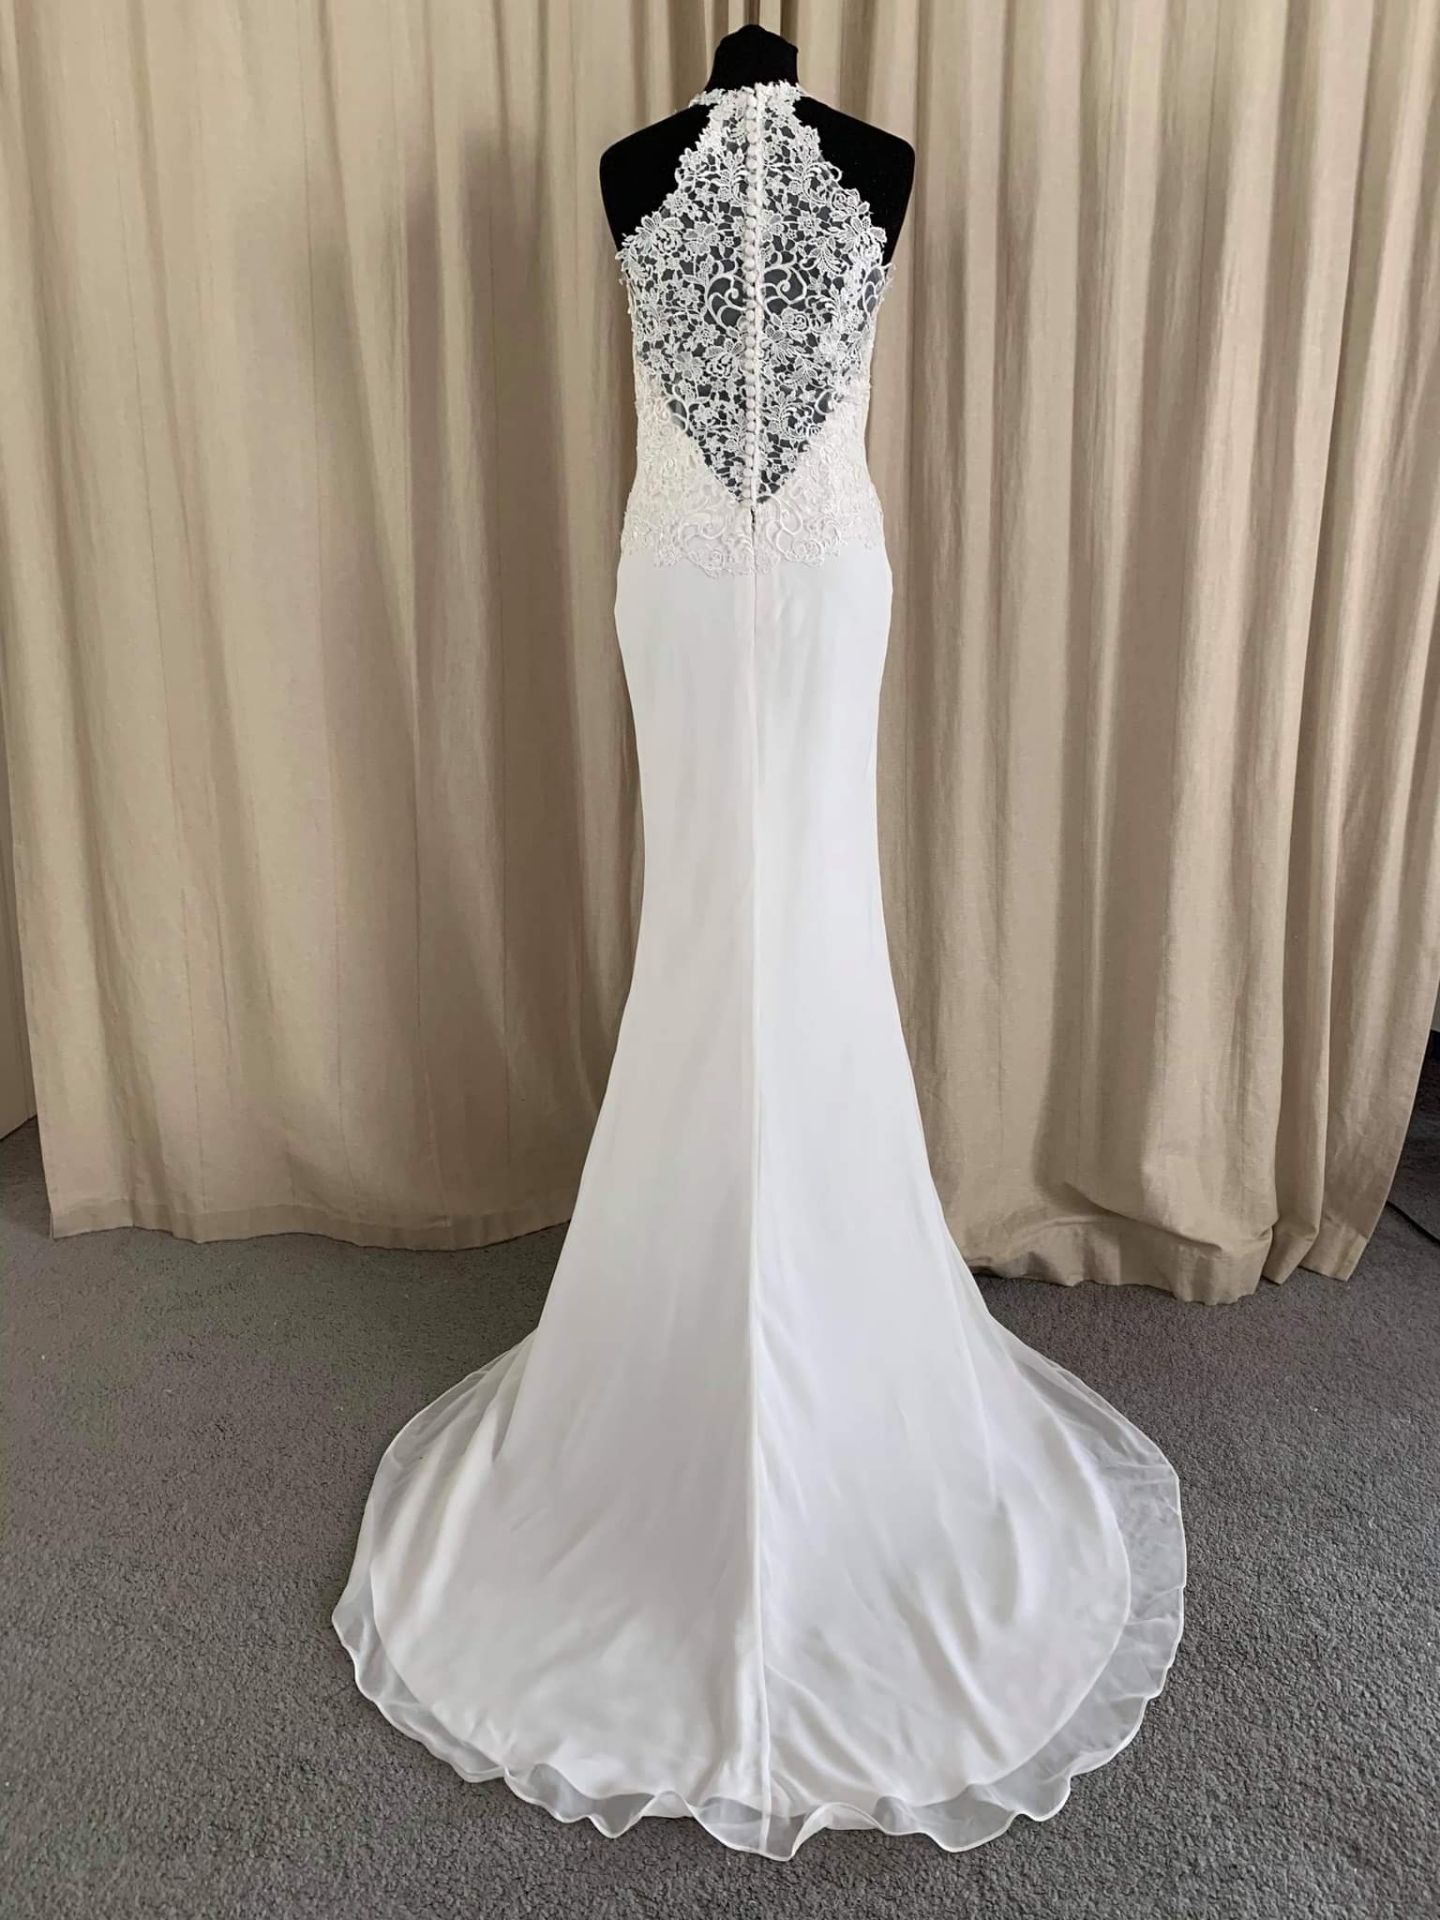 Alexia Wedding Dress Style W416 Size 6 - Image 2 of 5